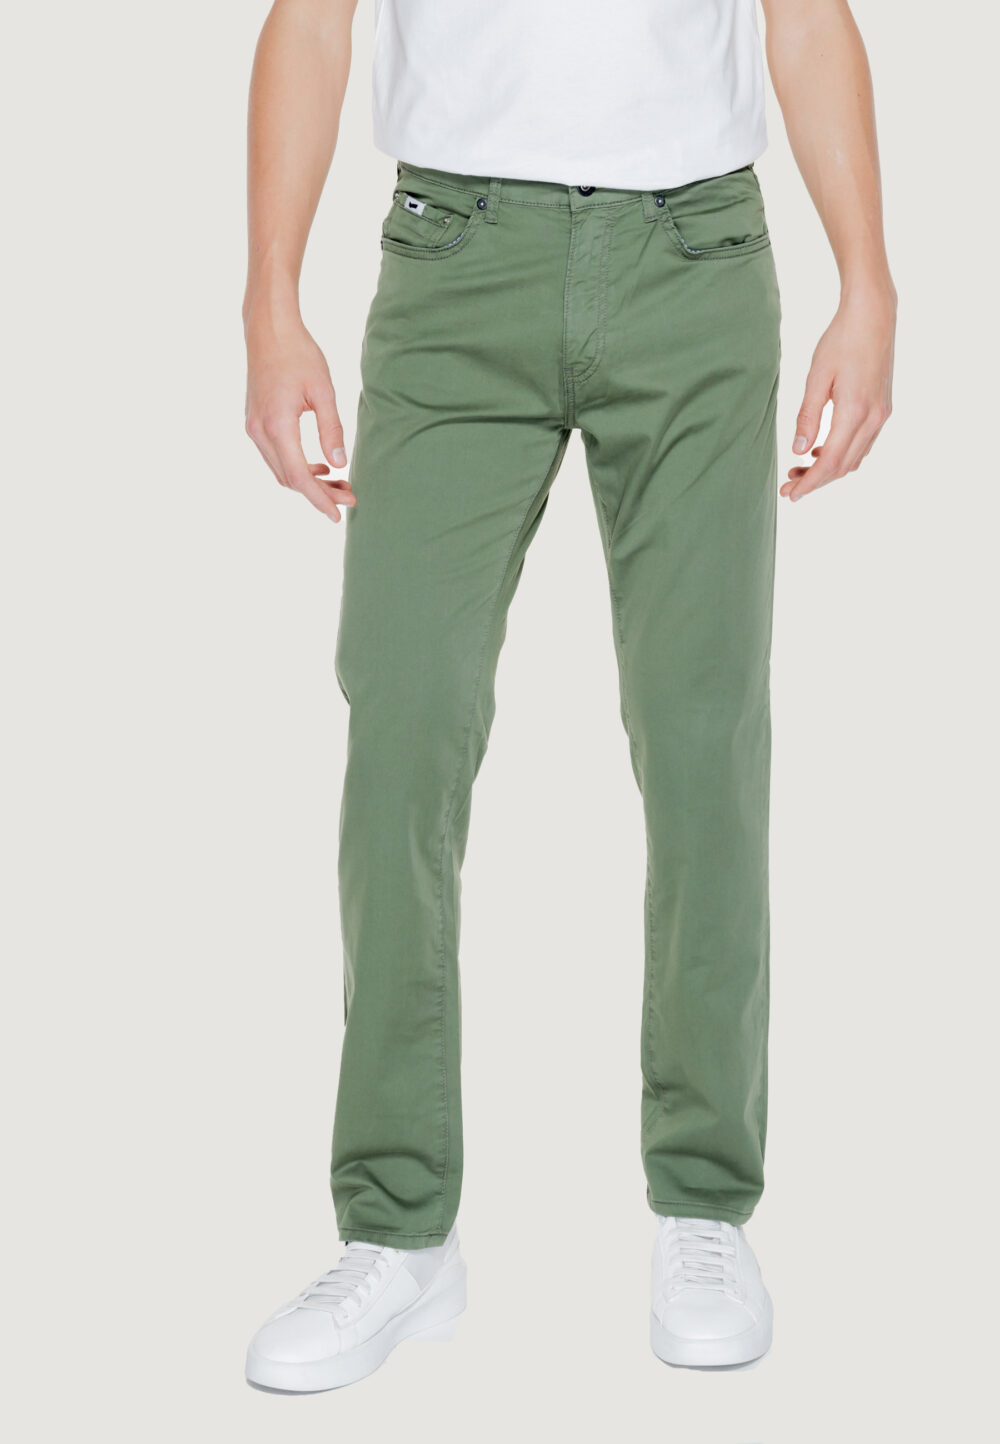 Pantaloni GAS ALBERT SIMPLE REV Verde - Foto 1